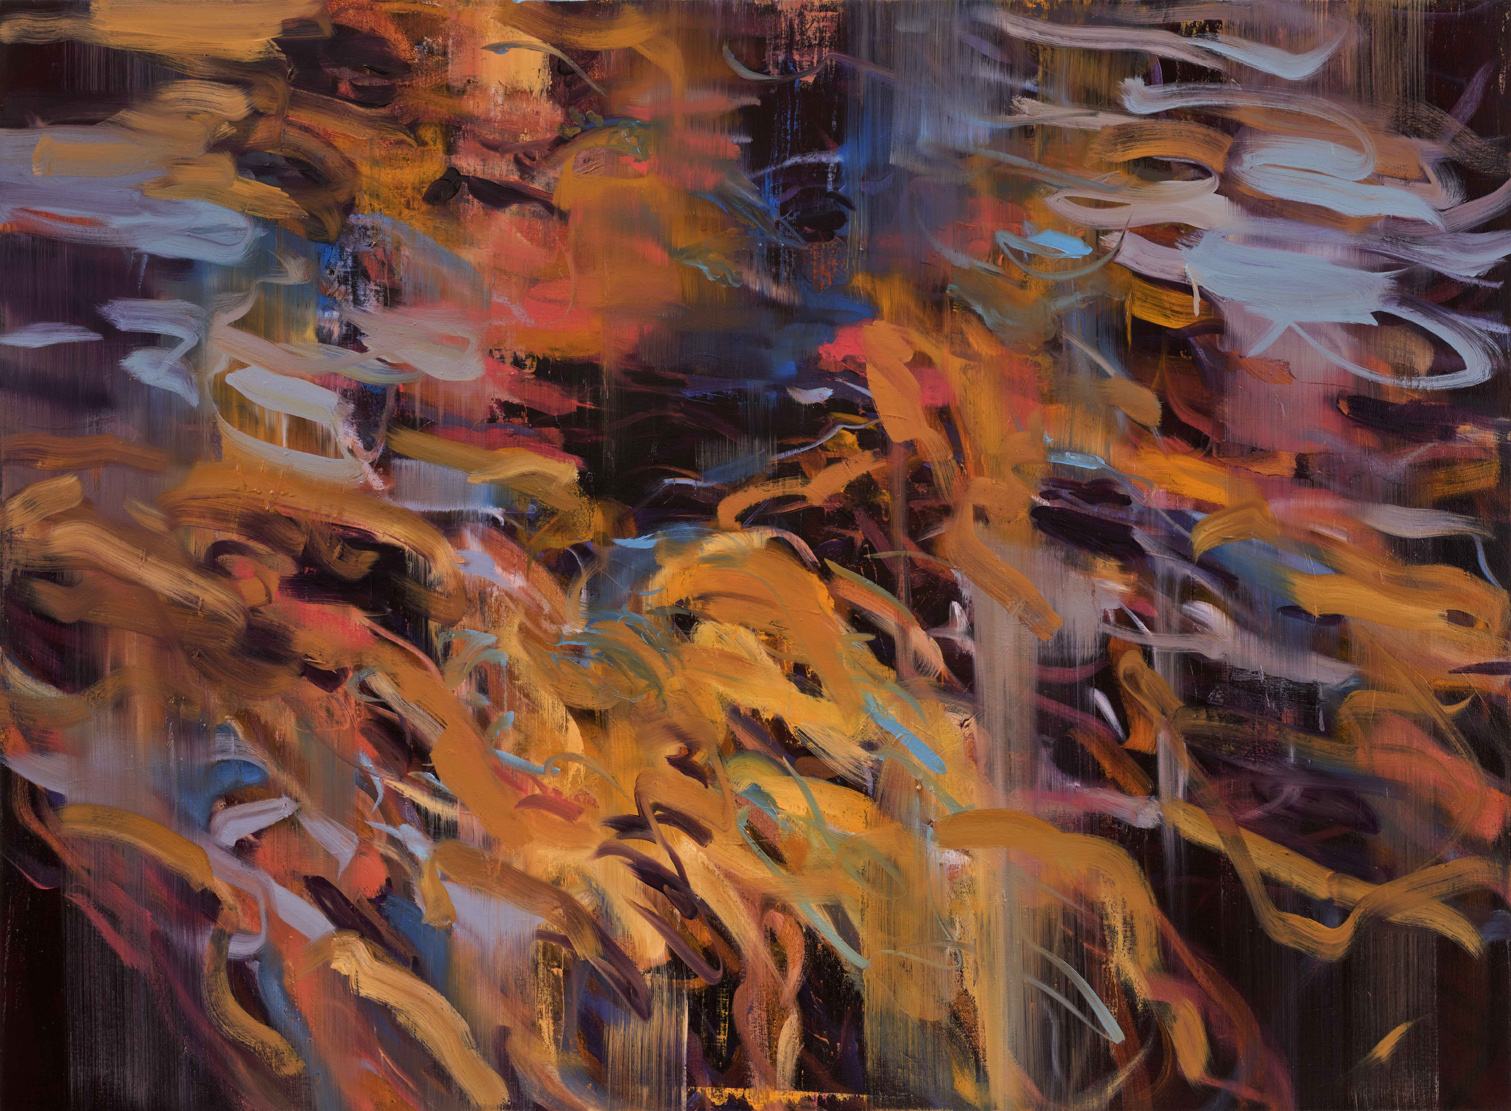  Untitled no 2 (dark ground)  2015  oil on canvas  146 x 199 cm 